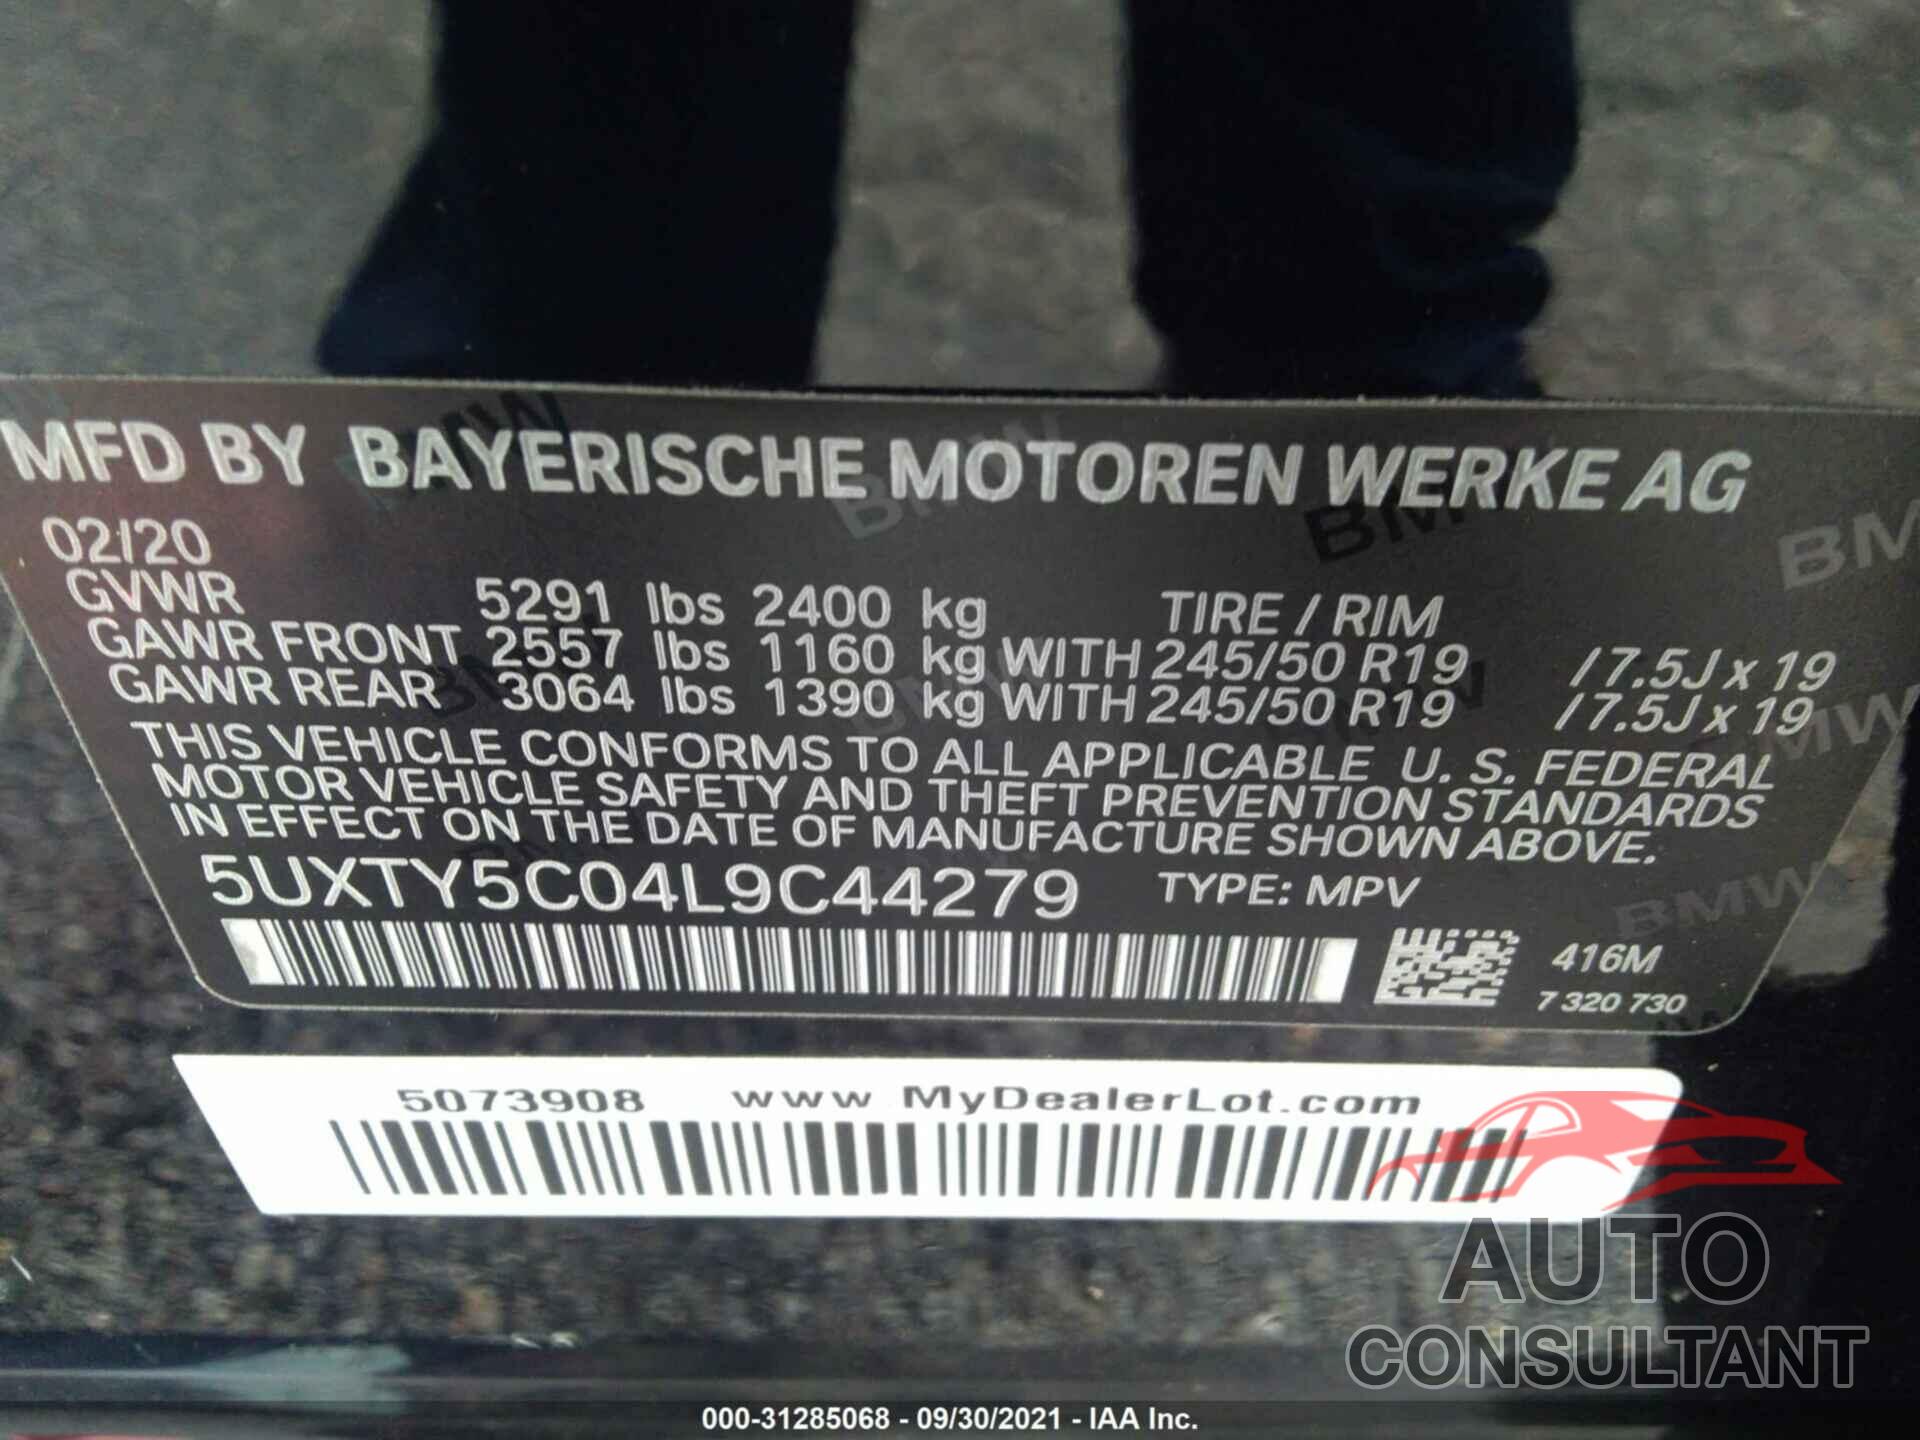 BMW X3 2020 - 5UXTY5C04L9C44279